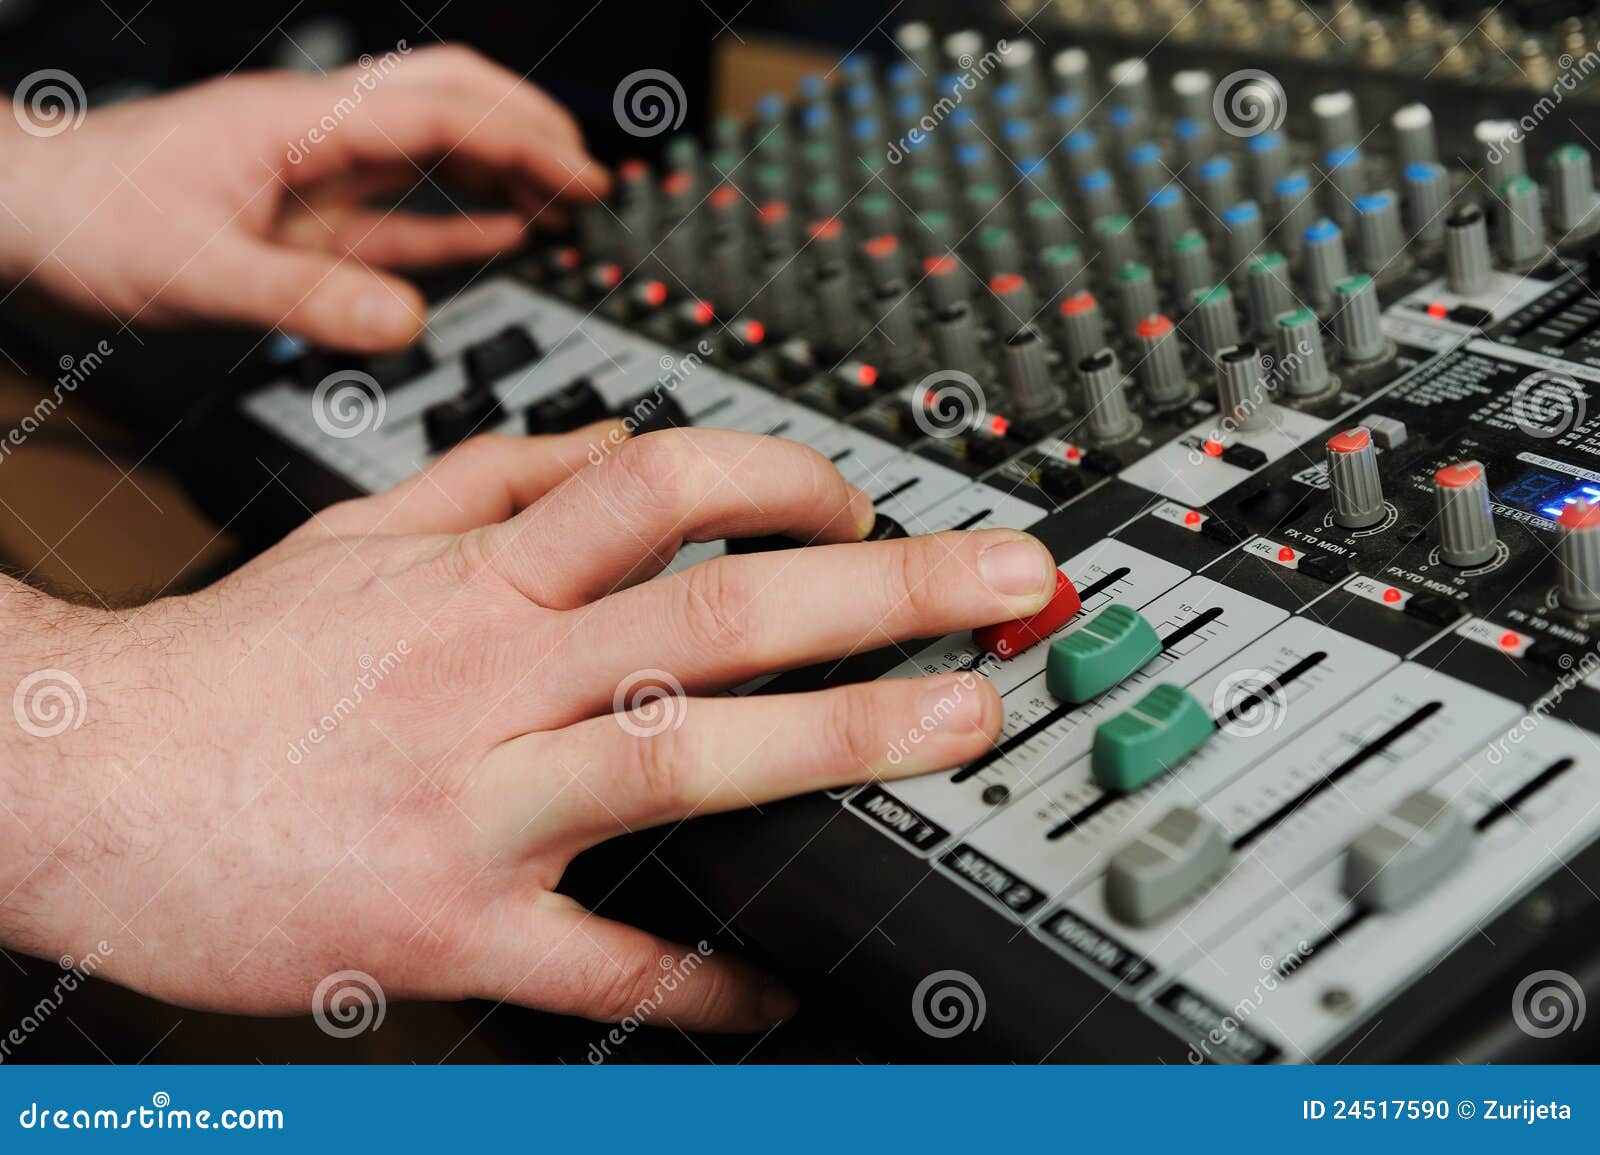 Closeup Audio Mixer with Buttons Stock Photo - Image of bass, closeup ...